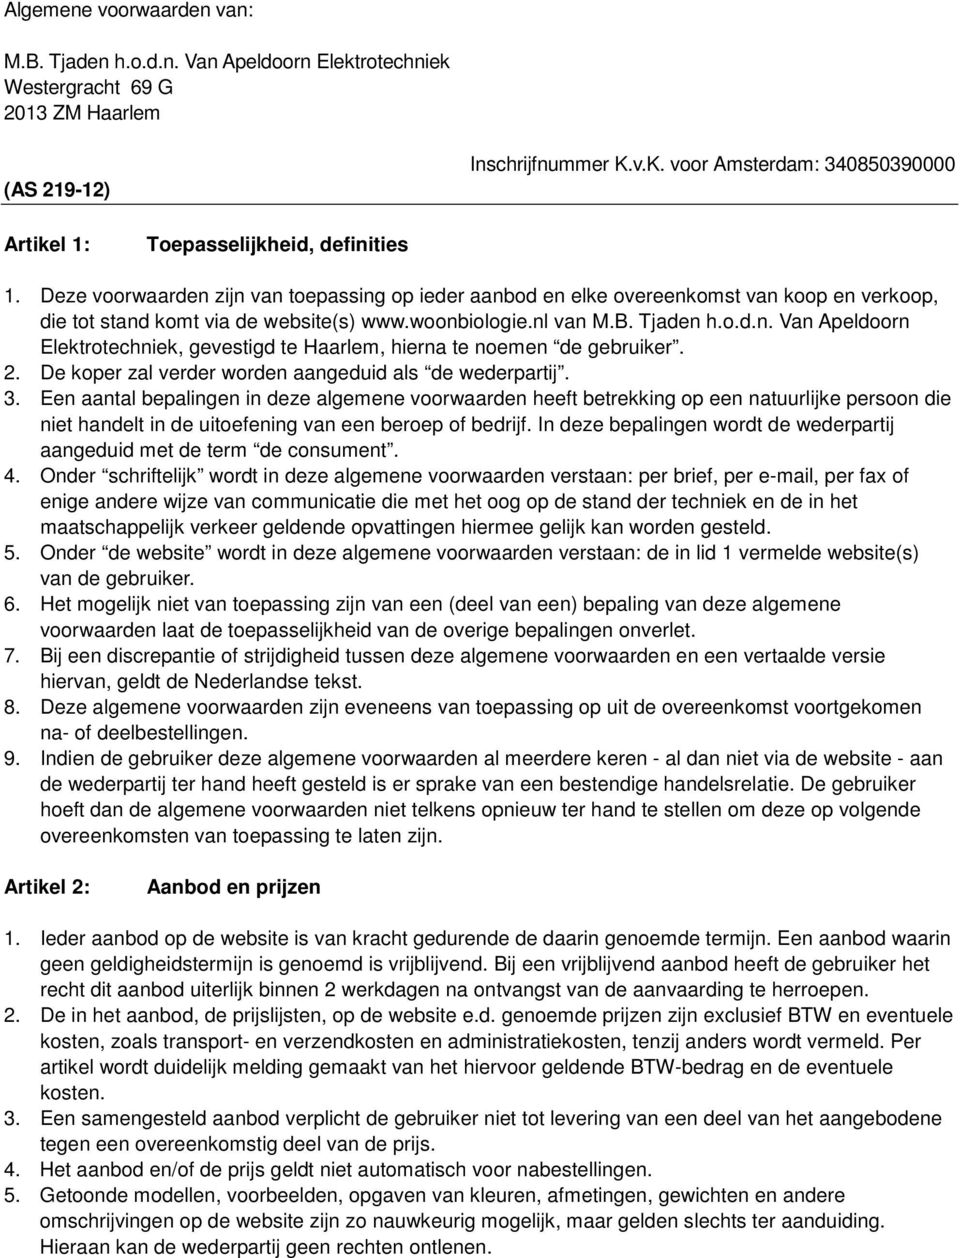 Deze voorwaarden zijn van toepassing op ieder aanbod en elke overeenkomst van koop en verkoop, die tot stand komt via de website(s) www.woonbiologie.nl van M.B. Tjaden h.o.d.n. Van Apeldoorn Elektrotechniek, gevestigd te Haarlem, hierna te noemen de gebruiker.